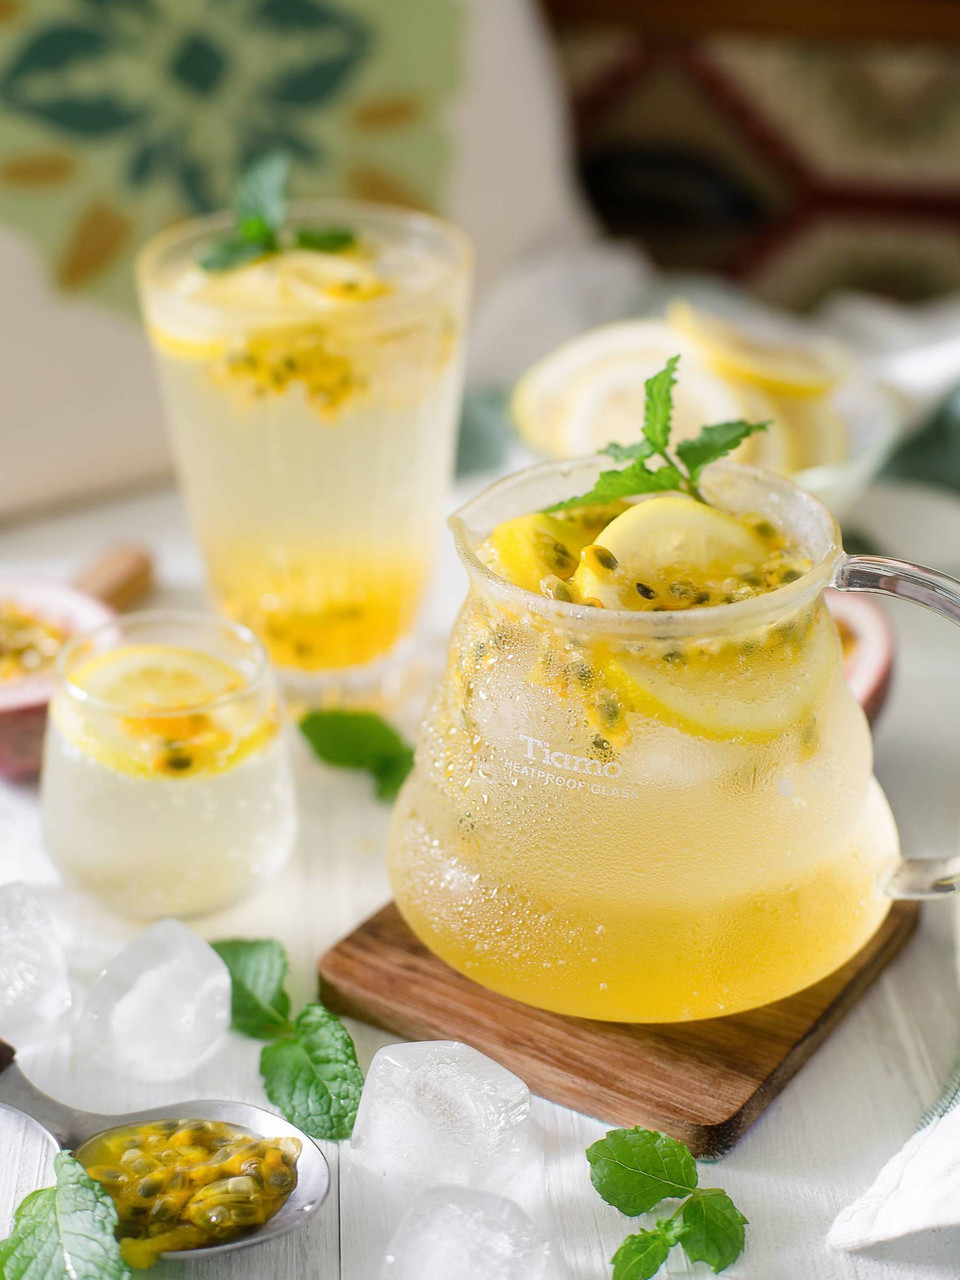 Pashionfruit lemonade